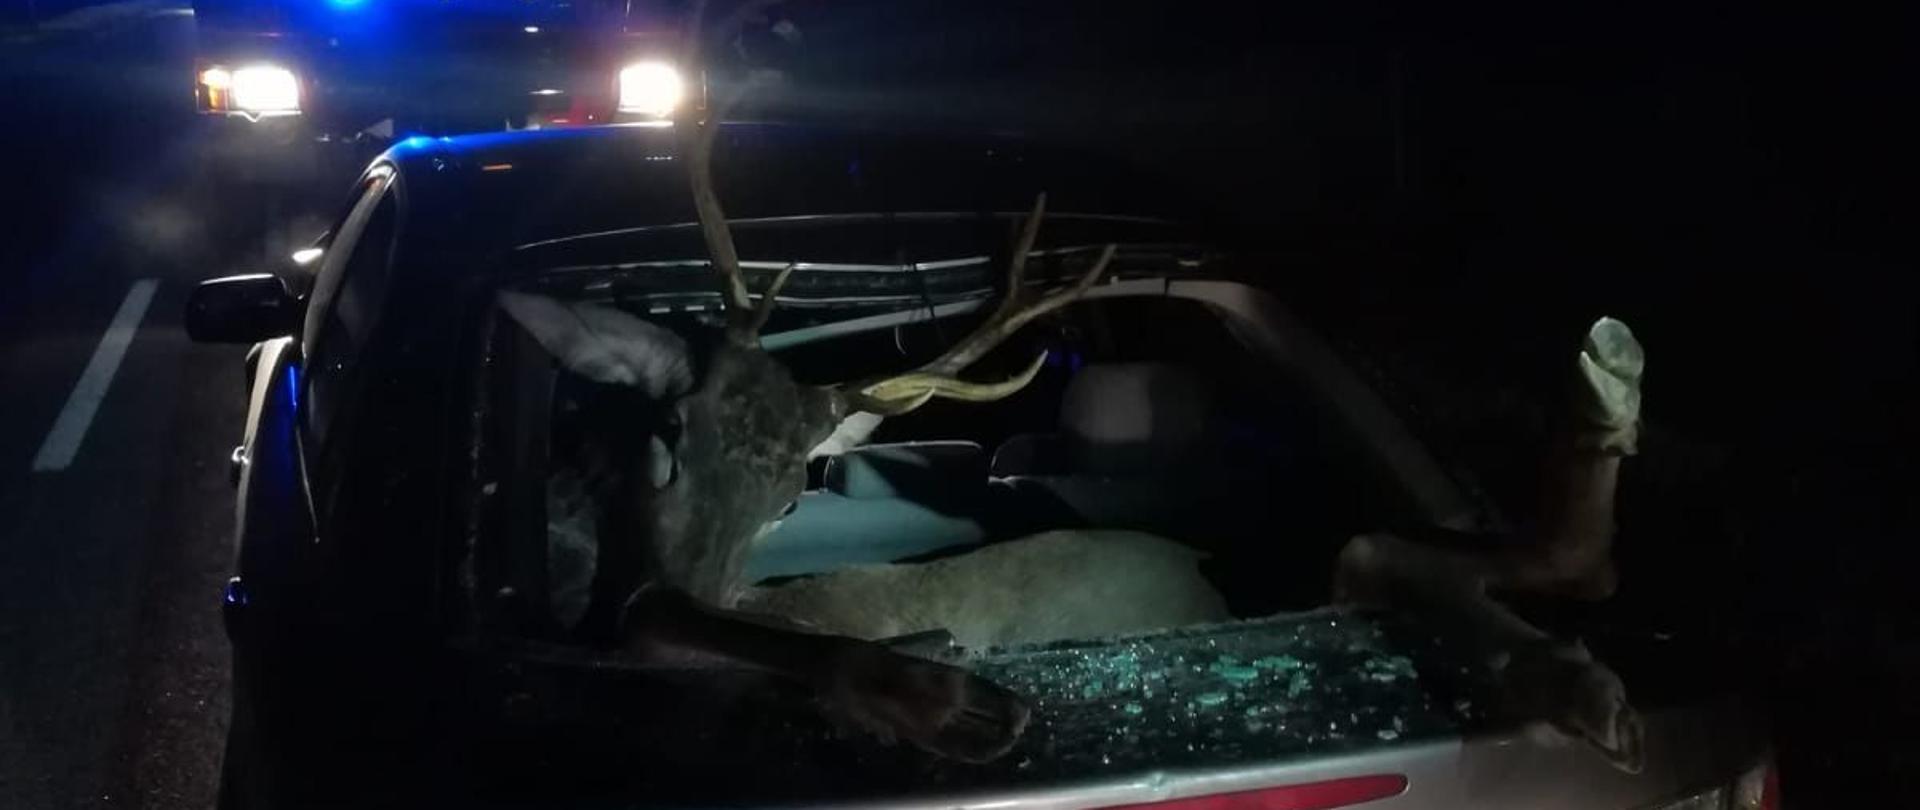 Zderzenie samochodu osobowego z jeleniem. Jeleń wpadł do samochodu poprzez wybitą przez niego tylną szybę. Zwierzę znajduje się na tylnej kanapie.